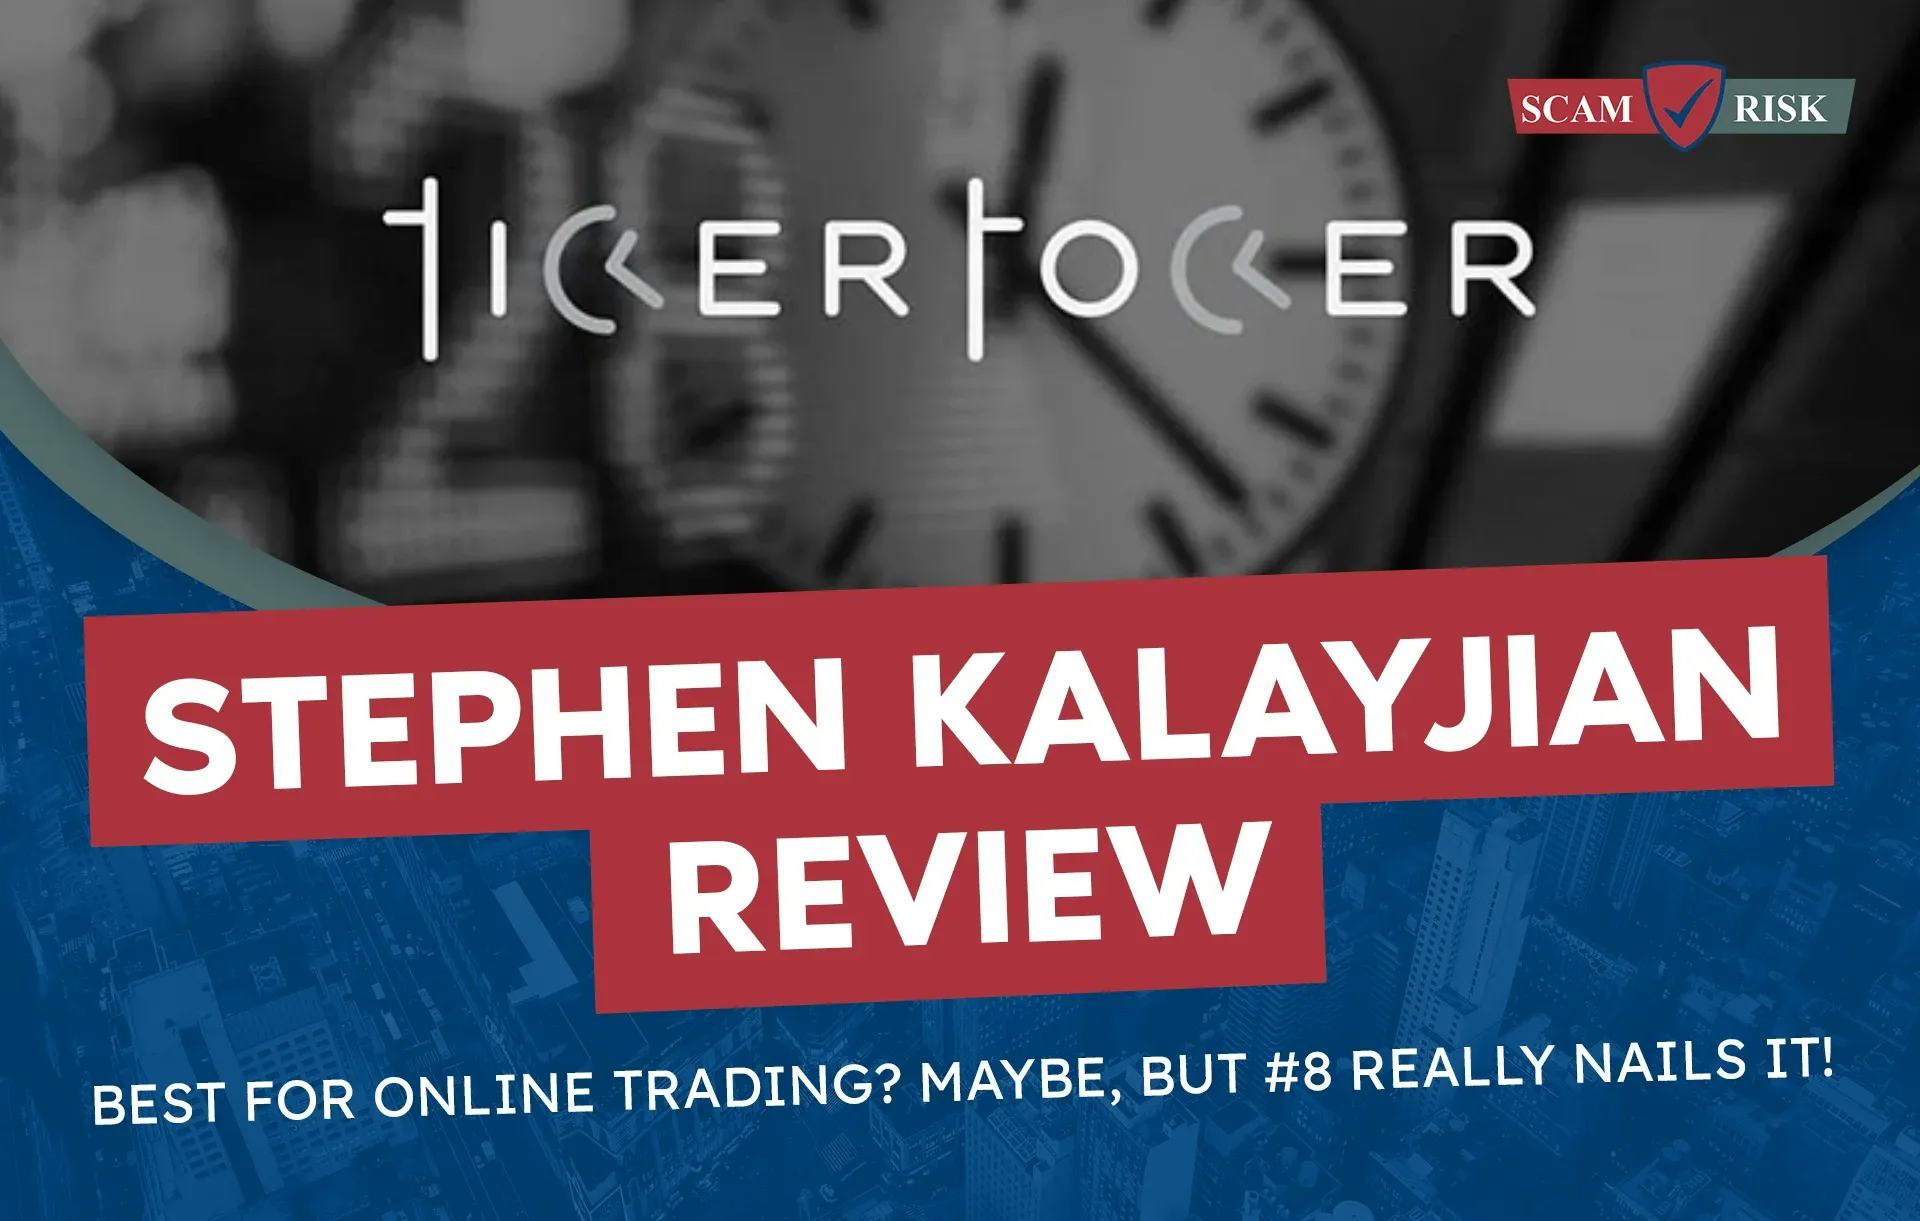 Ticker Tocker Review: Best For Online Trading?